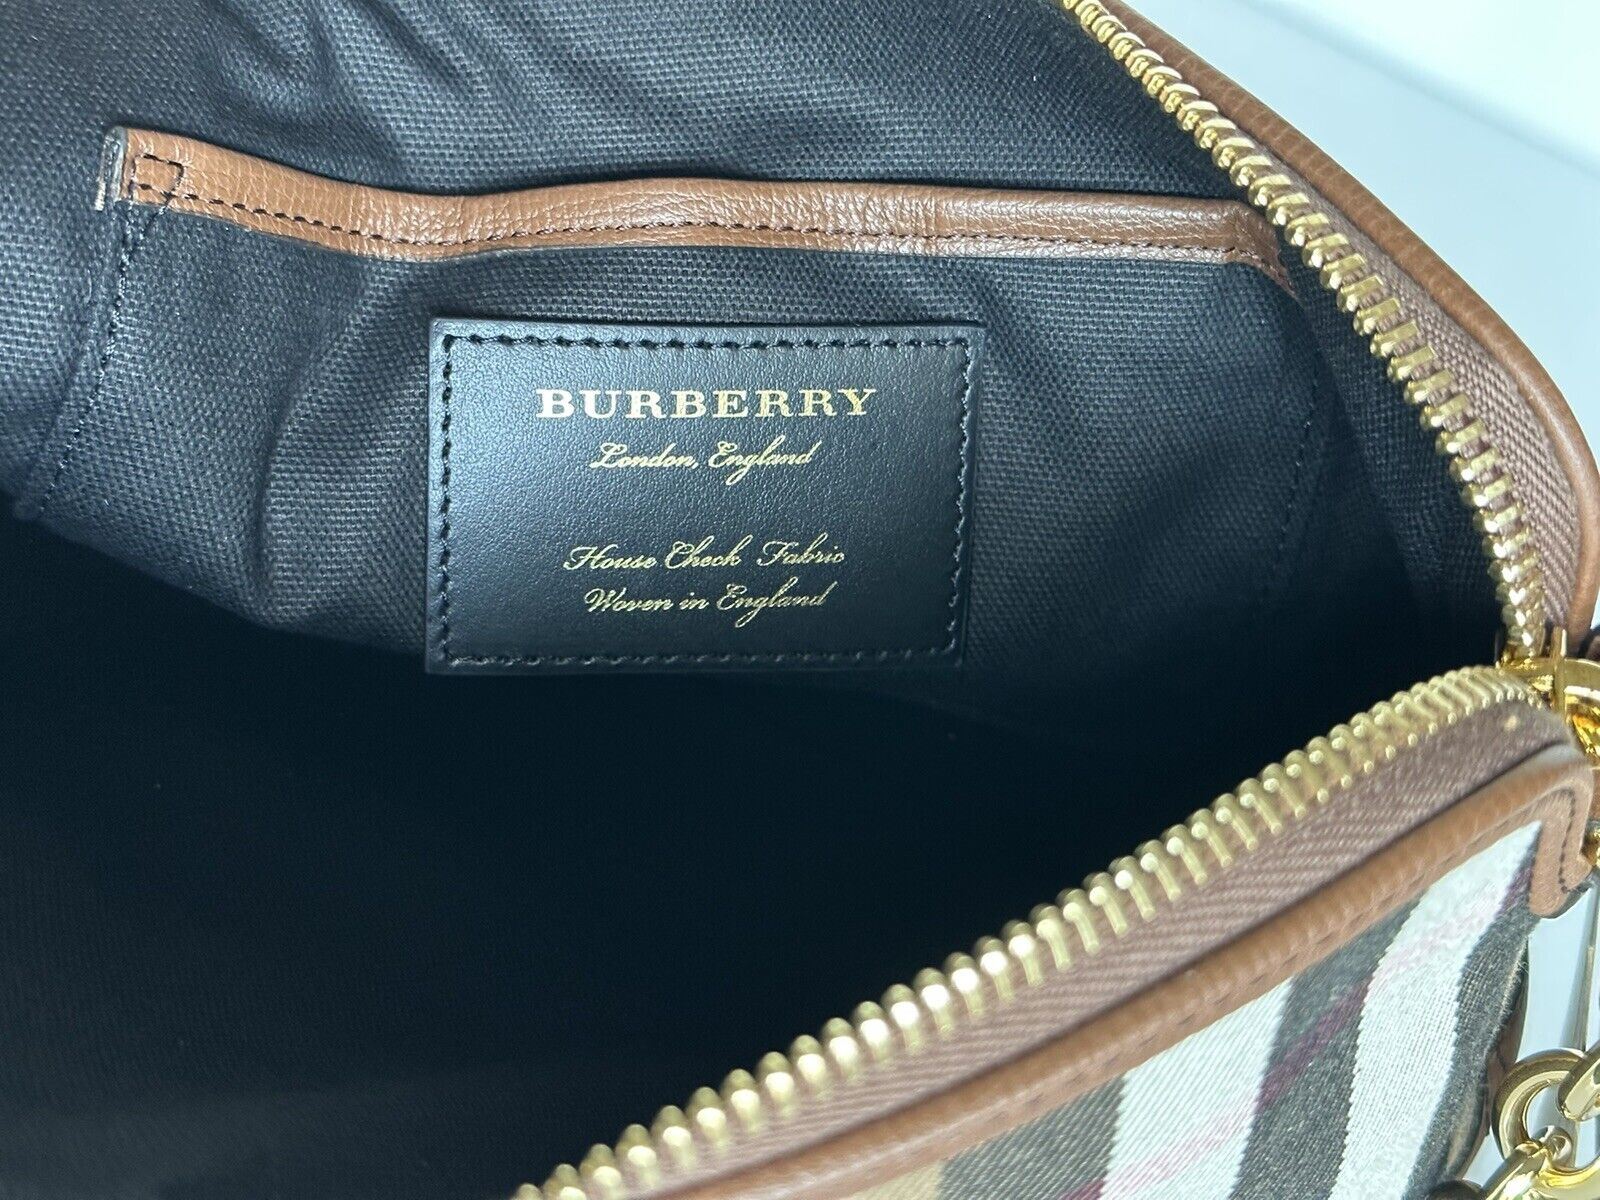 Neu mit Etikett: Burberry Abingdon House Check Derby Leder Umhängetasche Tan 40147391 Italien 